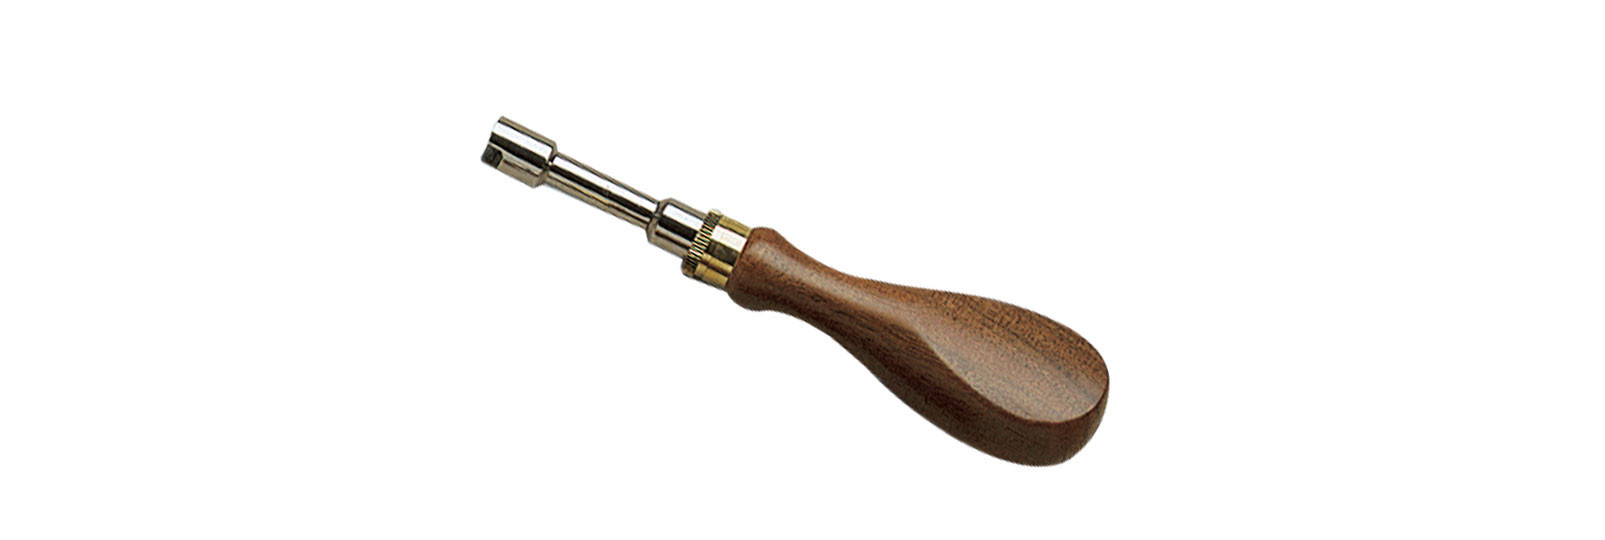 Chiave con manico in legno per armi avancarica